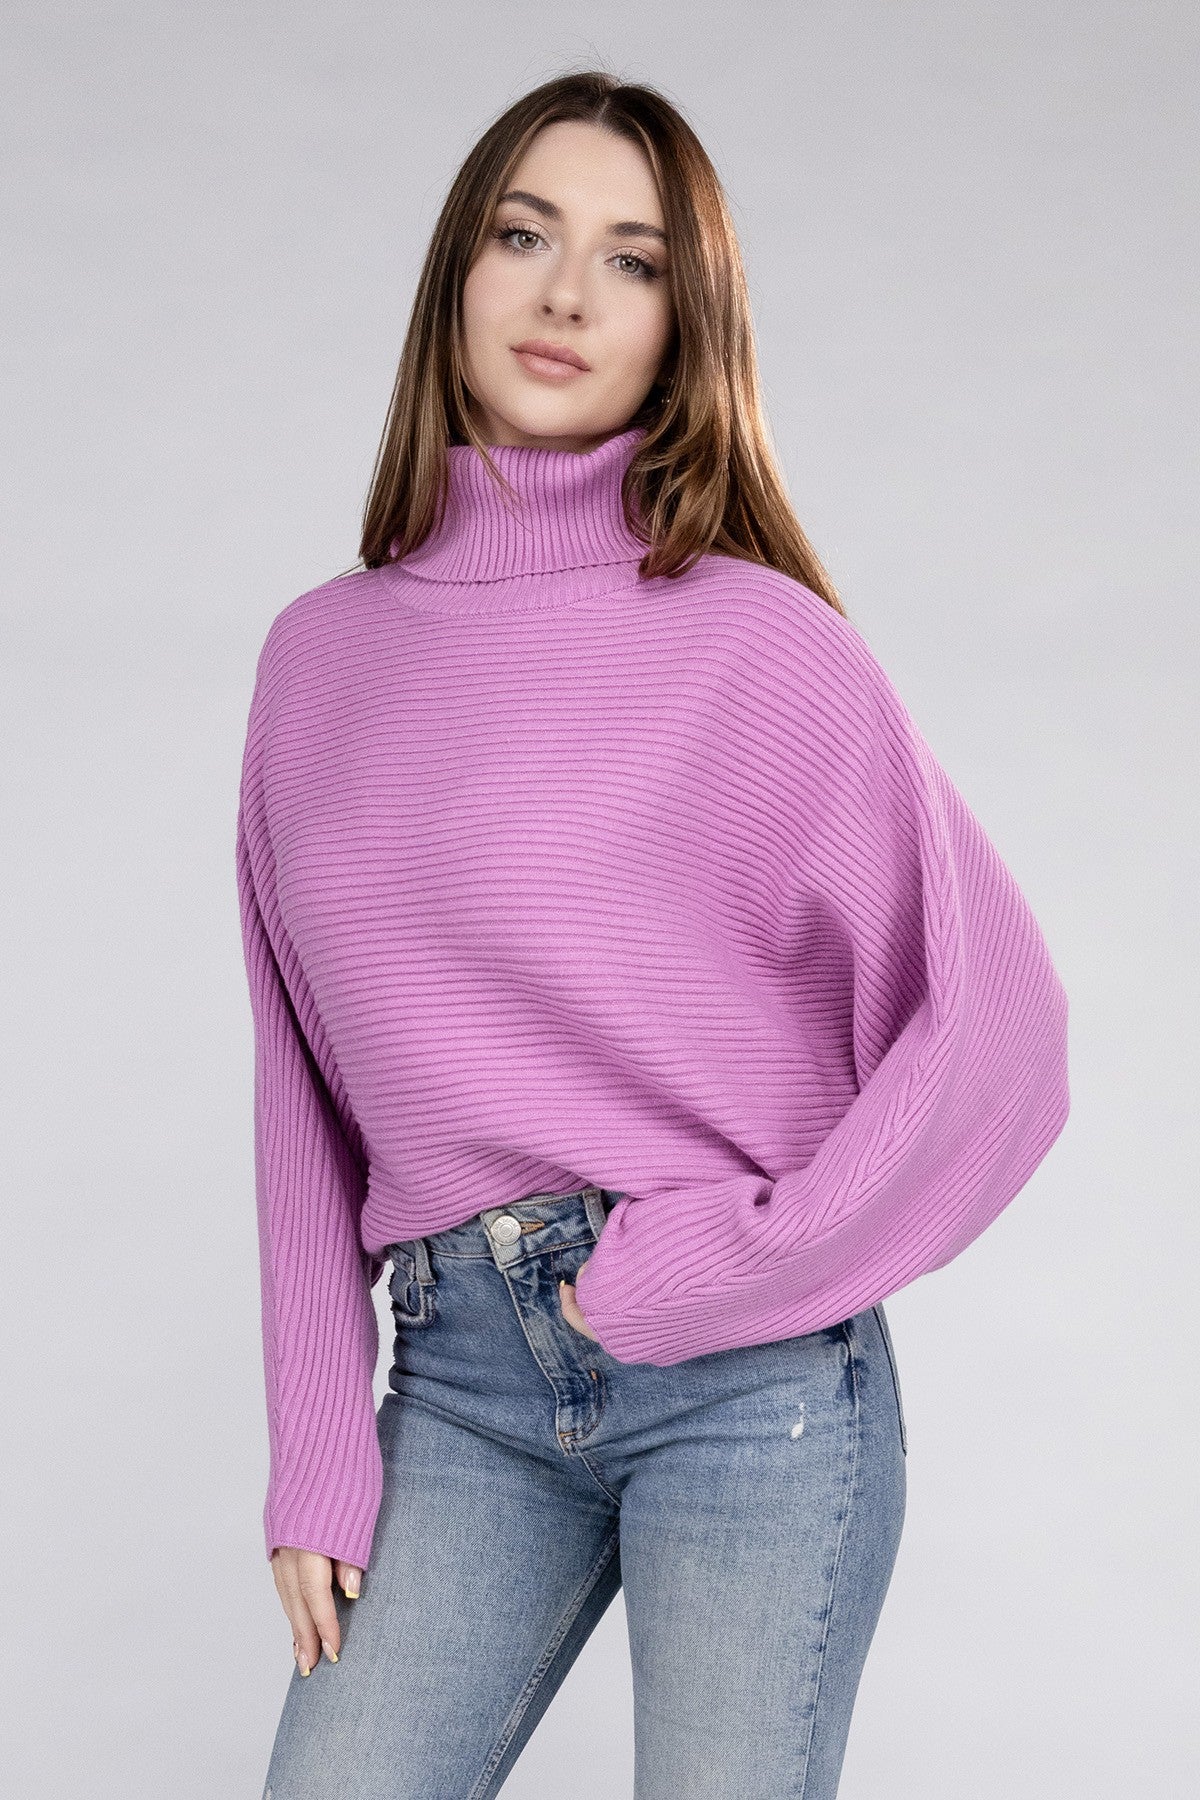 Dolman Sleeve Turtleneck Sweater 